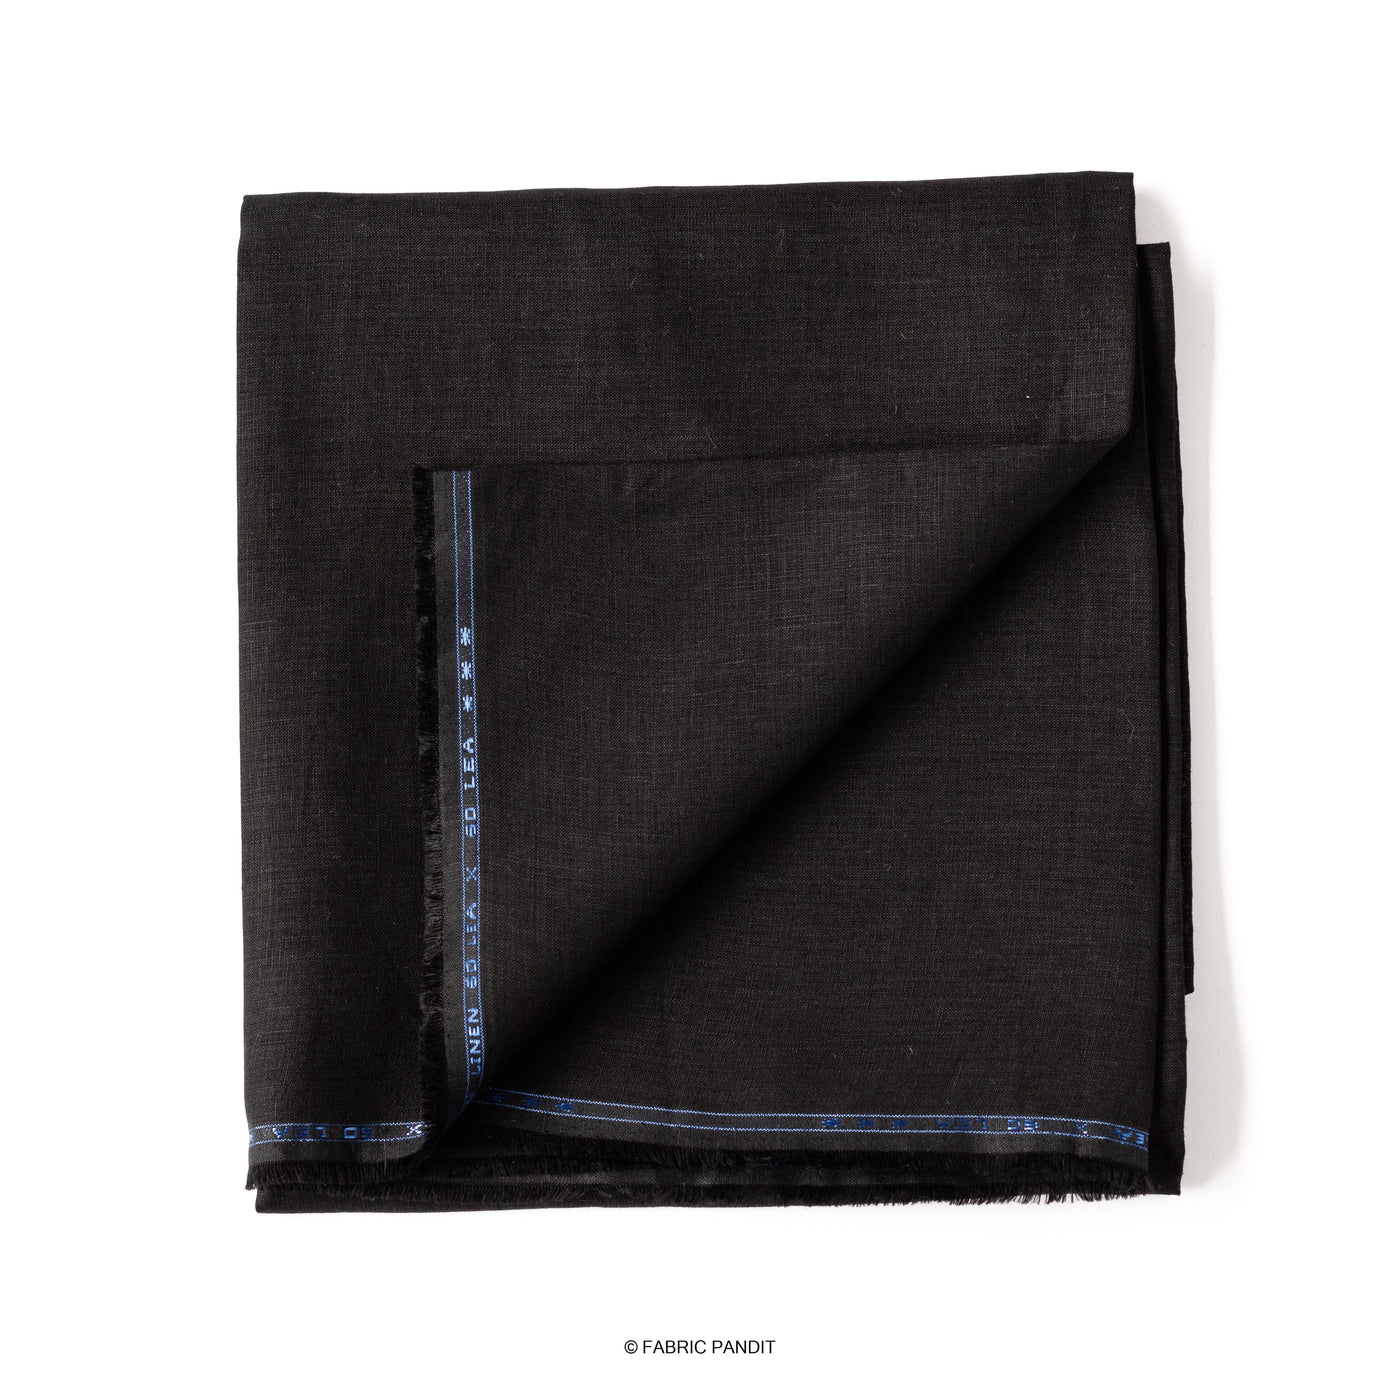 Fabric Pandit Cut Piece (Cut Piece) Carbon Black Plain Premium 60 Lea Pure Linen Fabric (Width 58 inch)